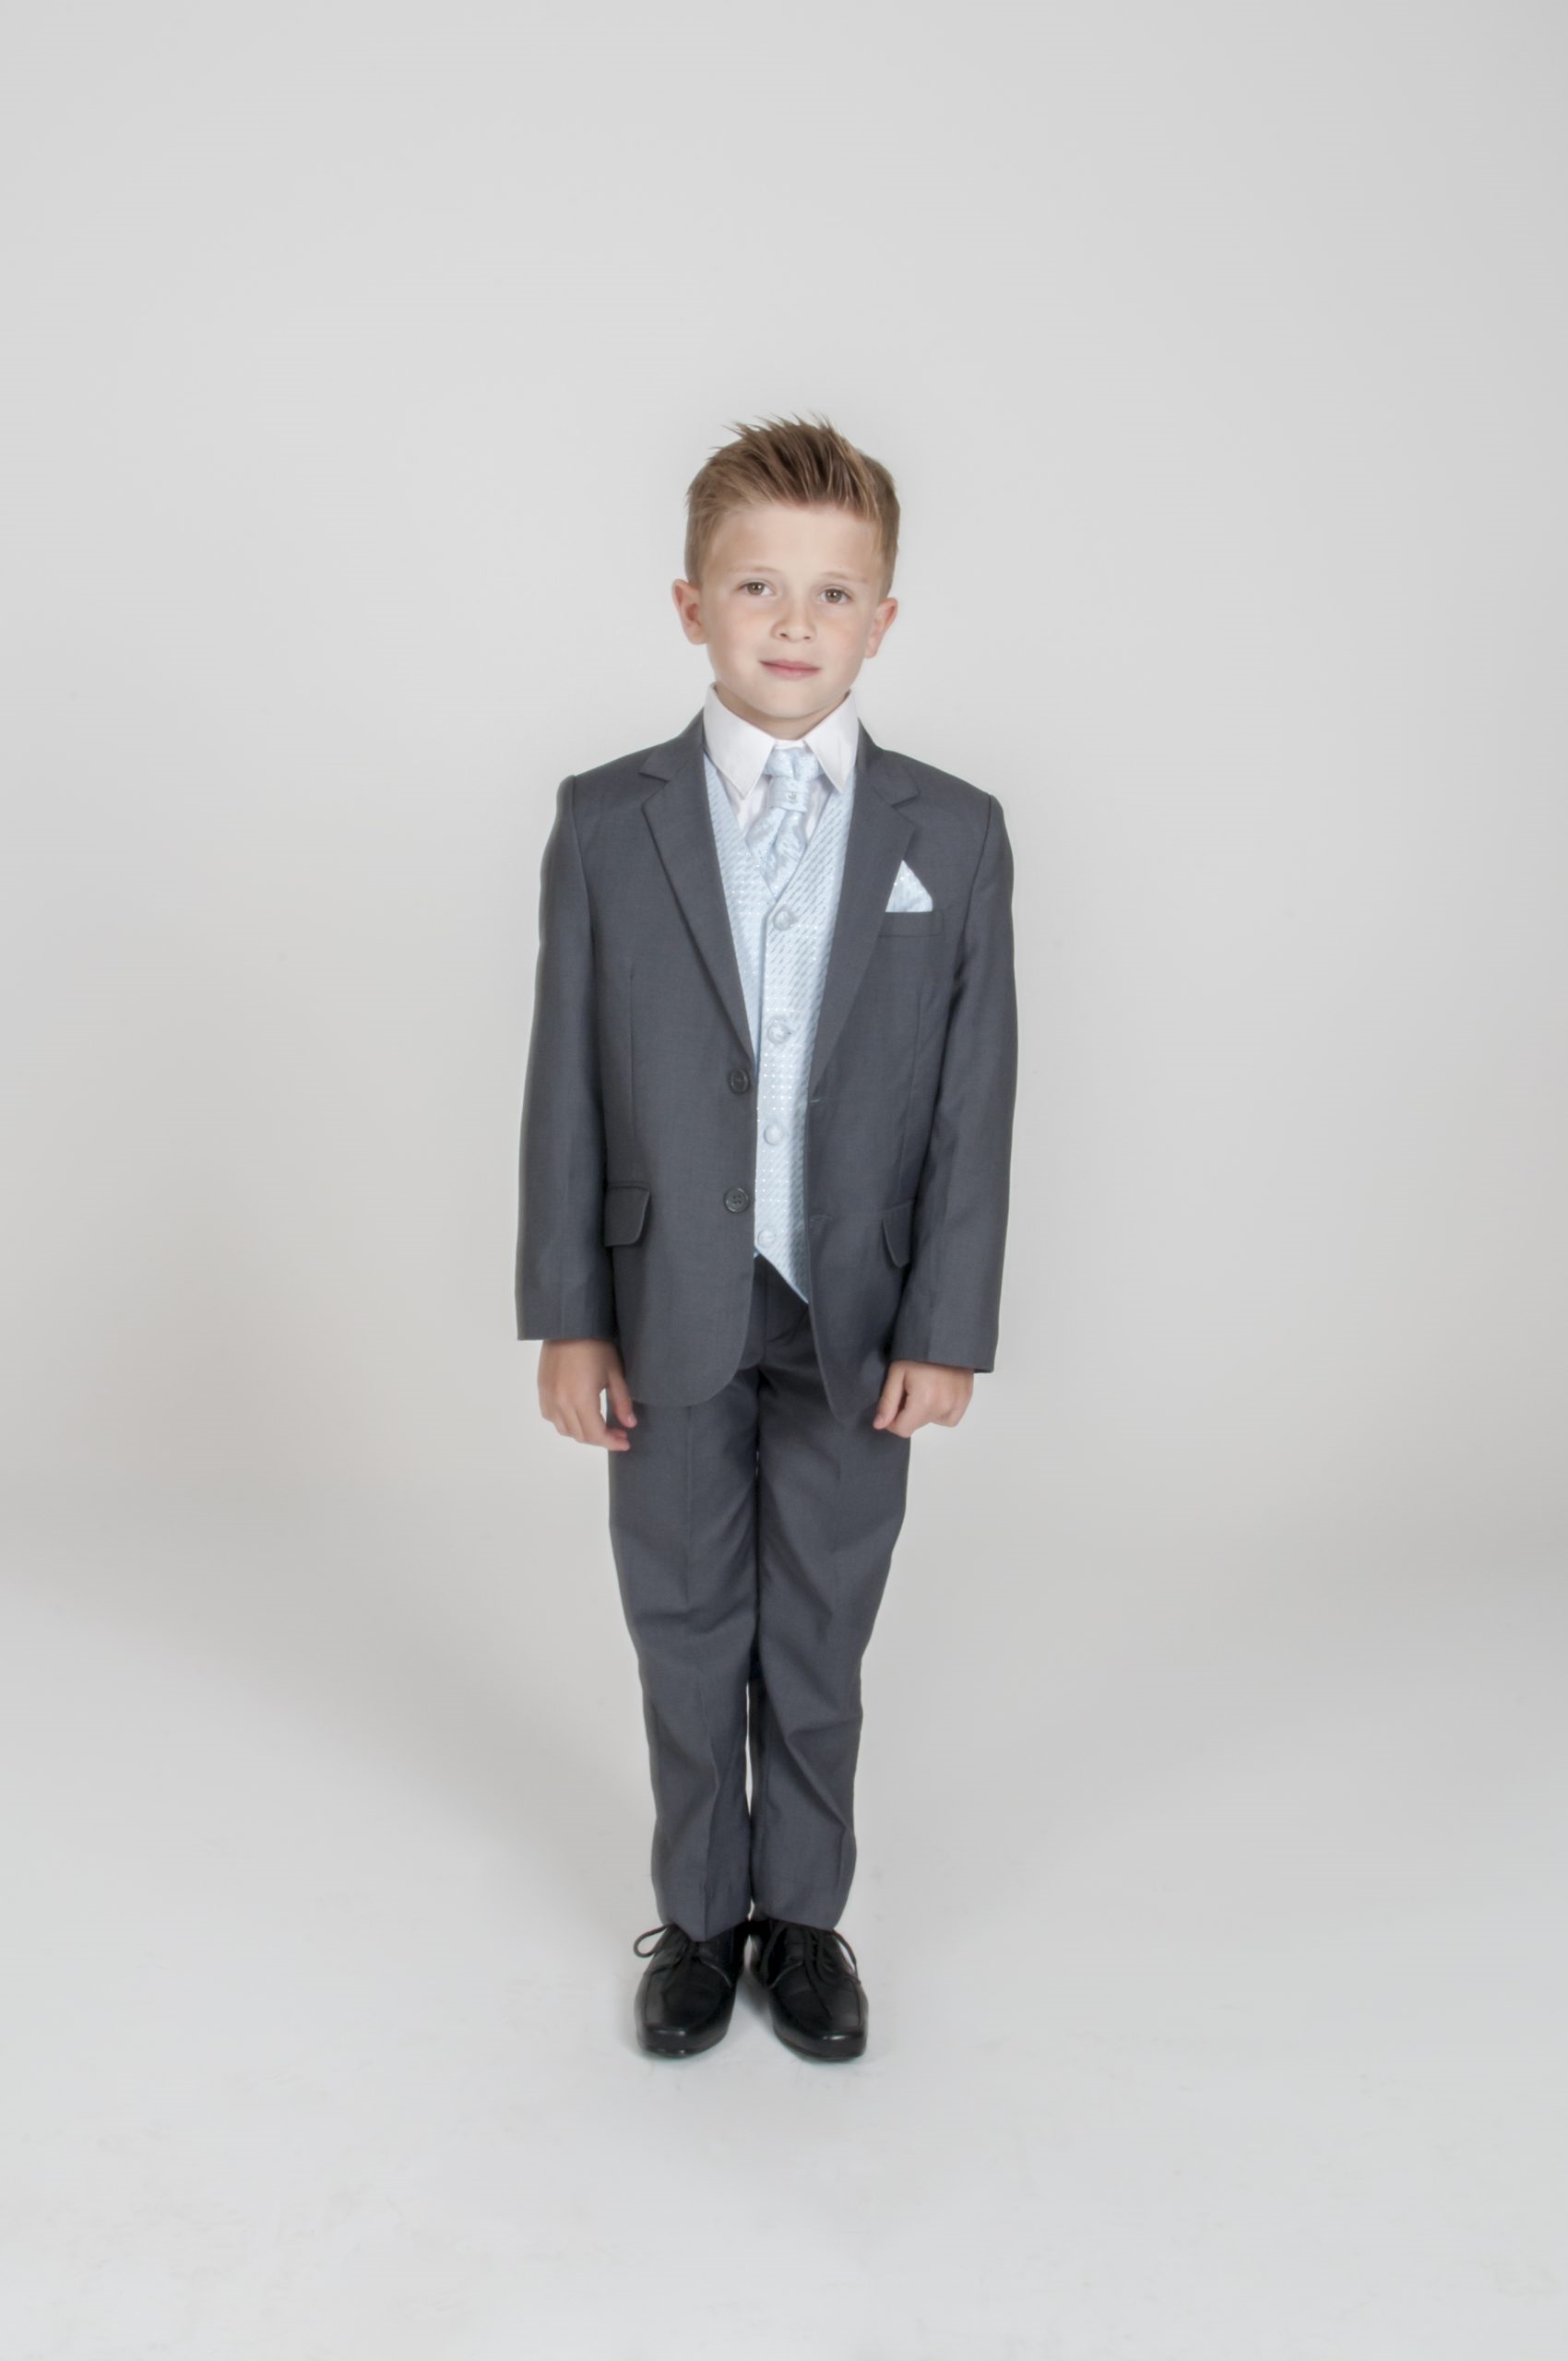 Fleksibel Tage med Synes godt om Børne jakkesæt: Anton; grå/lyseblå - jakkesæt i 5 (6) dele